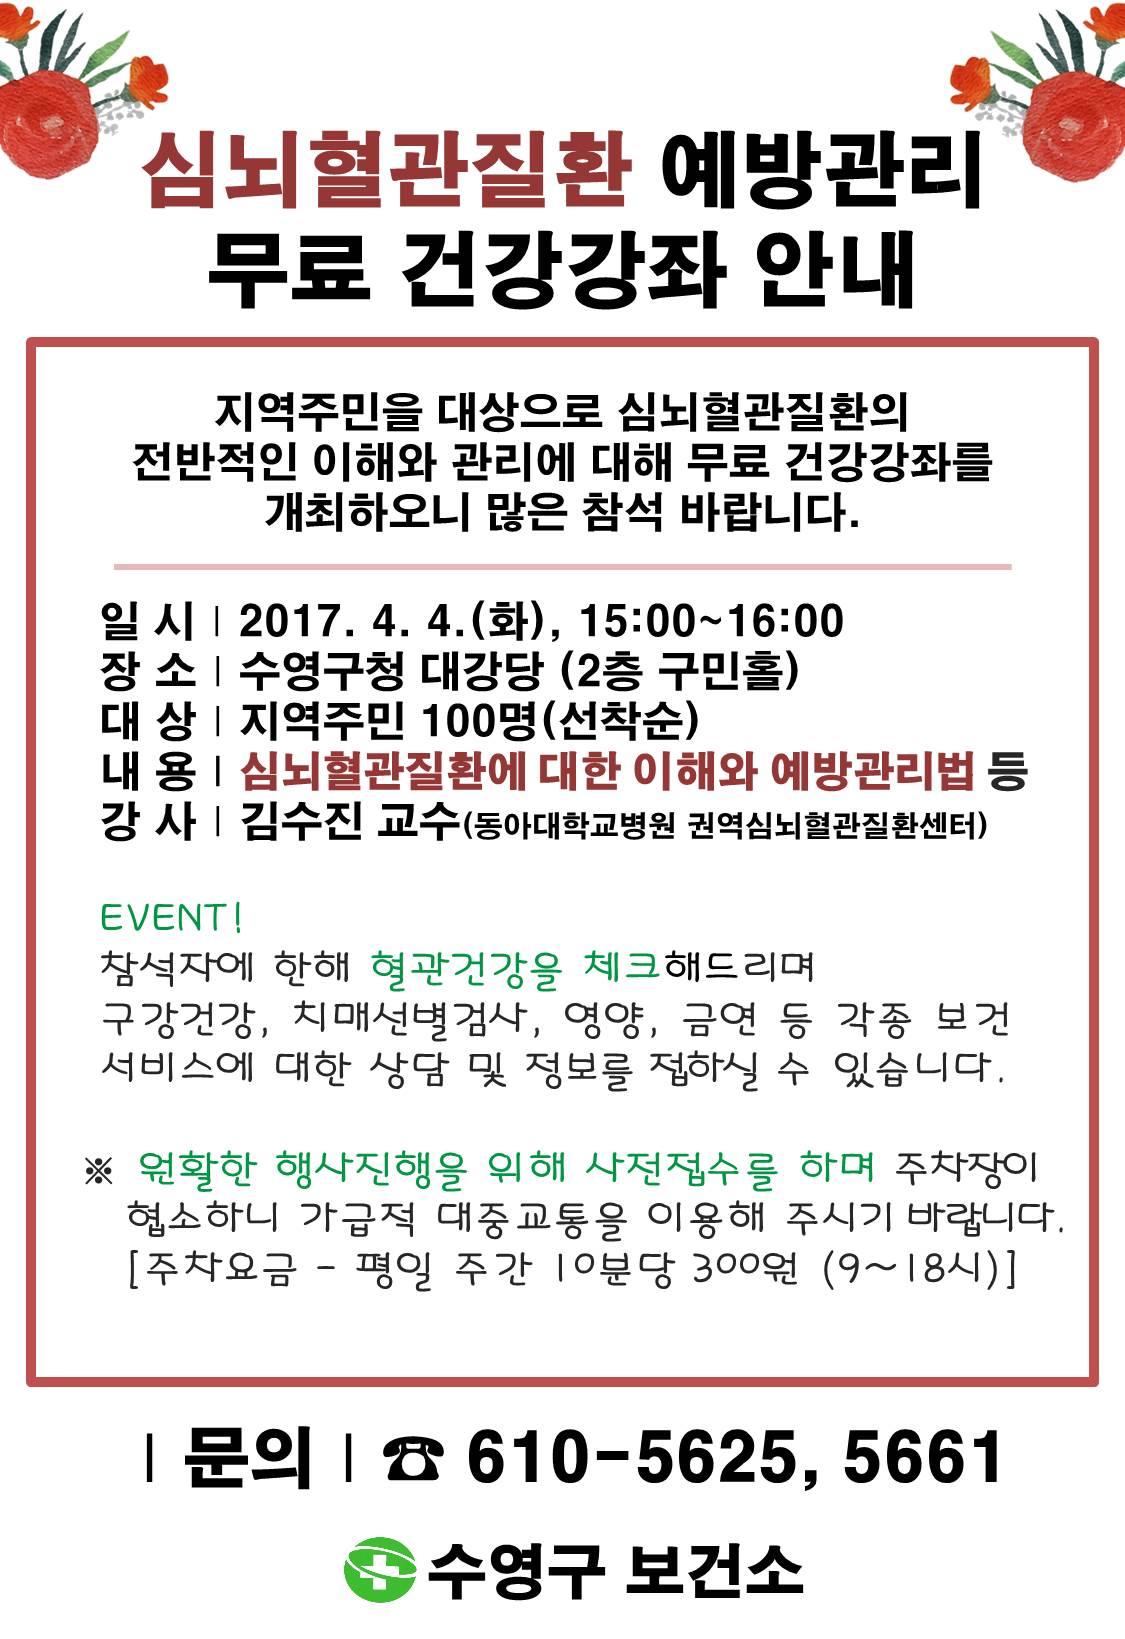 심뇌혈관질환예방관리 무료 건강강좌 개최 1